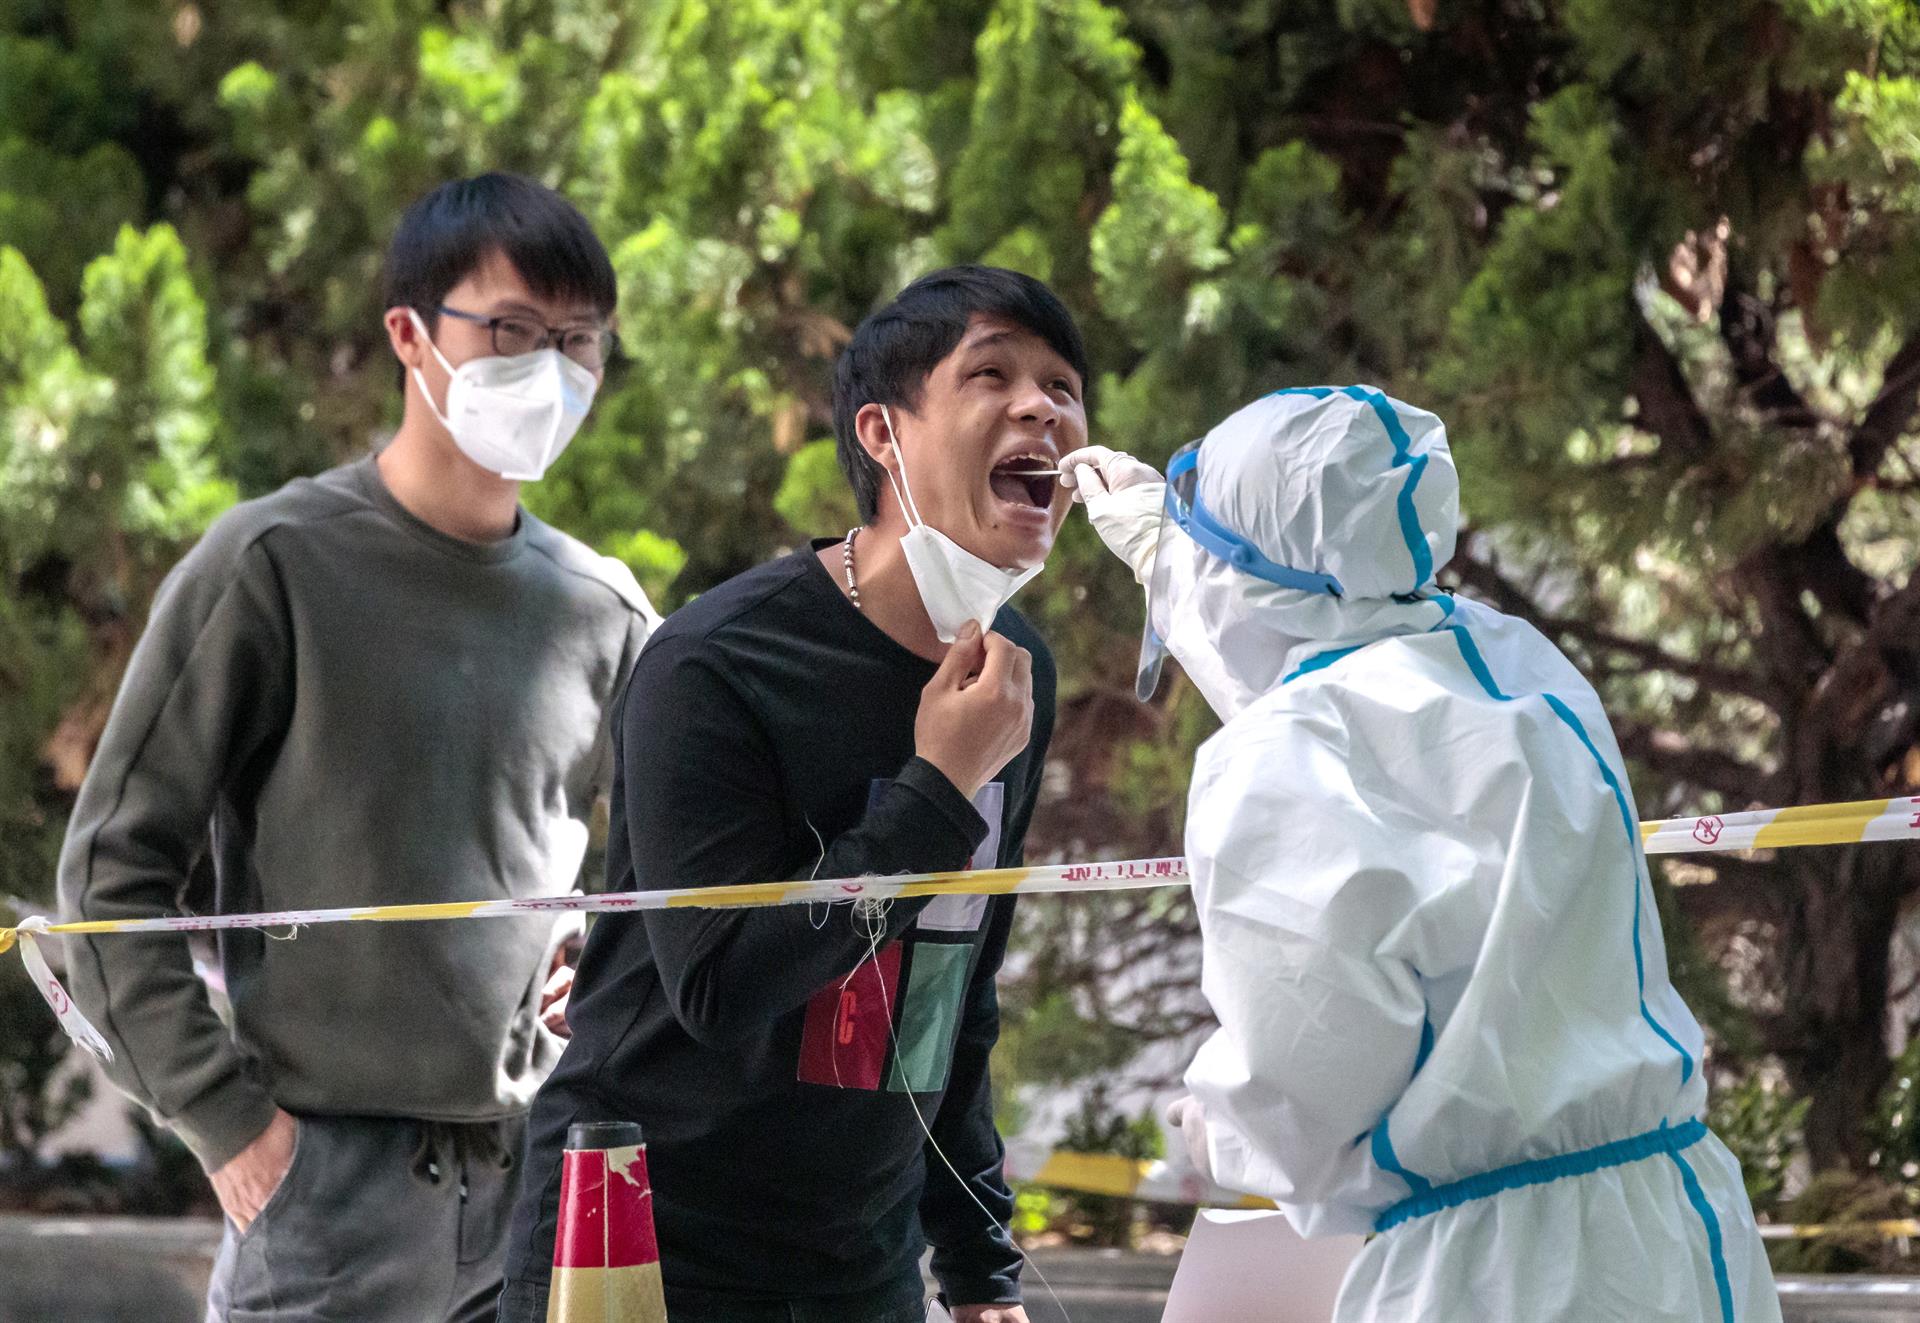 Shanghái registra cero contagios por primera vez desde el brote de Covid-19